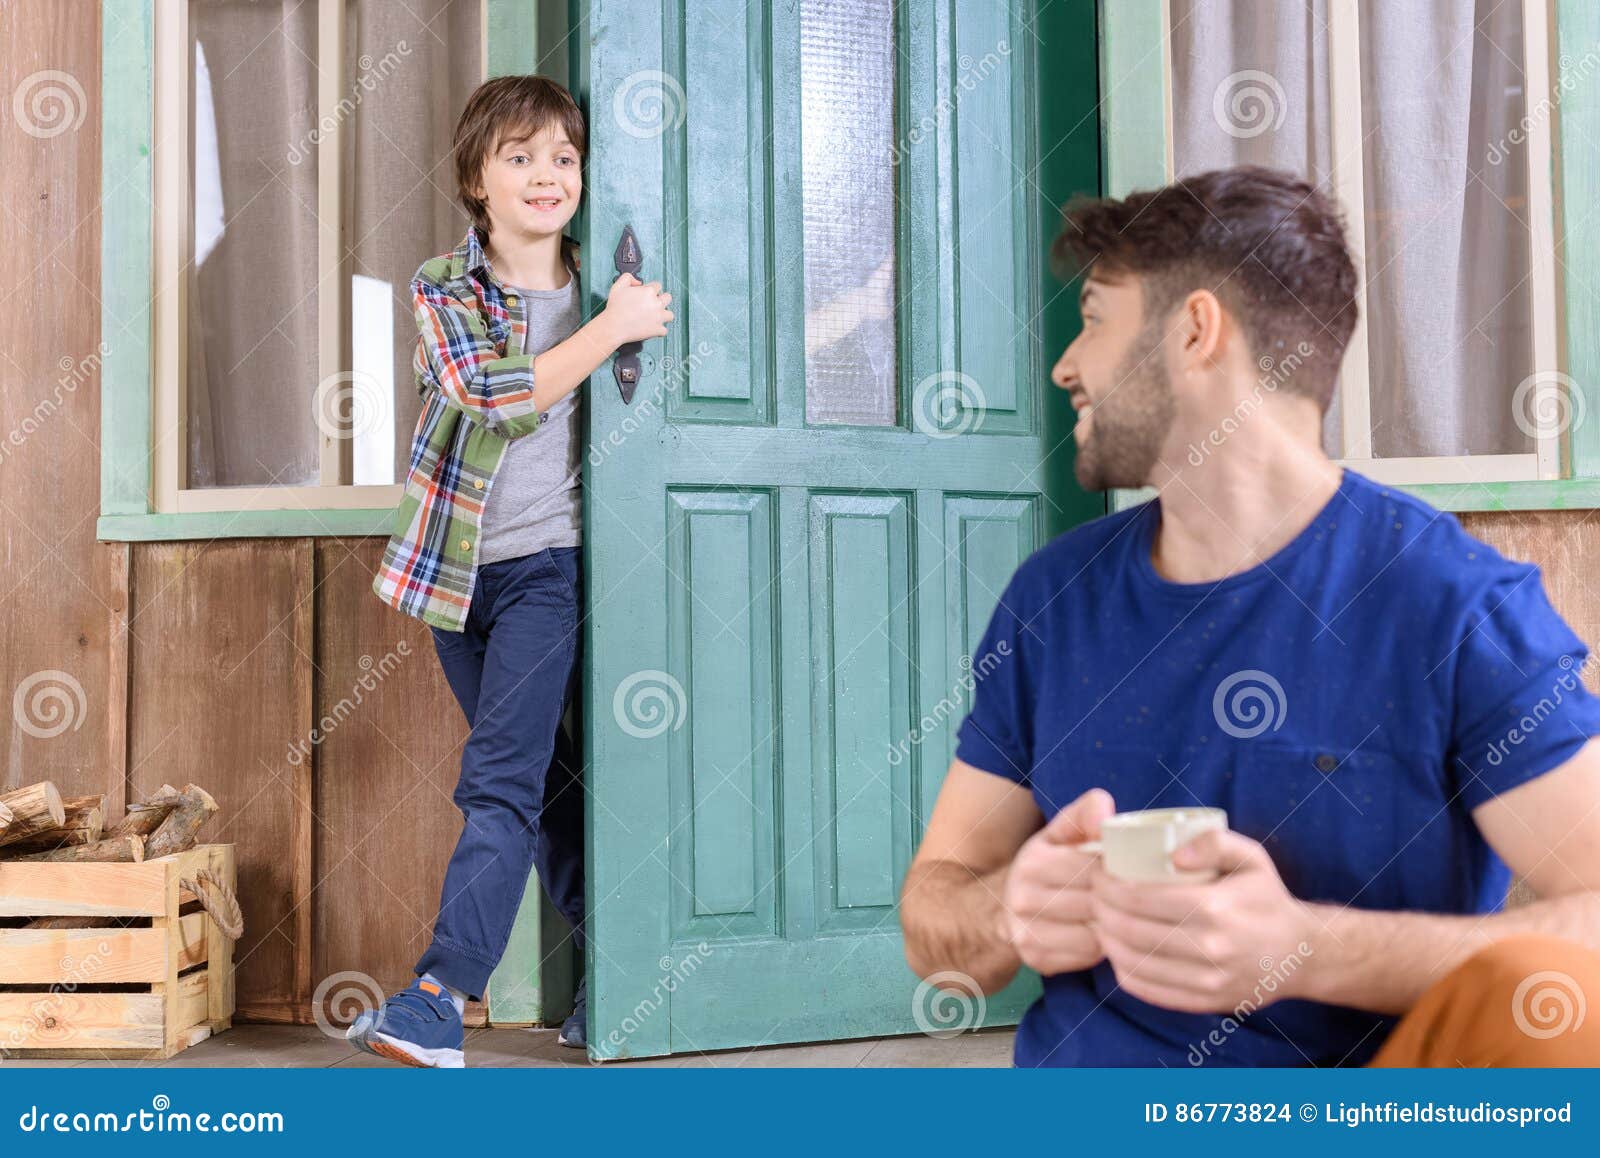 Дома держи дверь. Мужчина держит дверь. Держи дверь фото. Мальчик держит дверь бабушке.